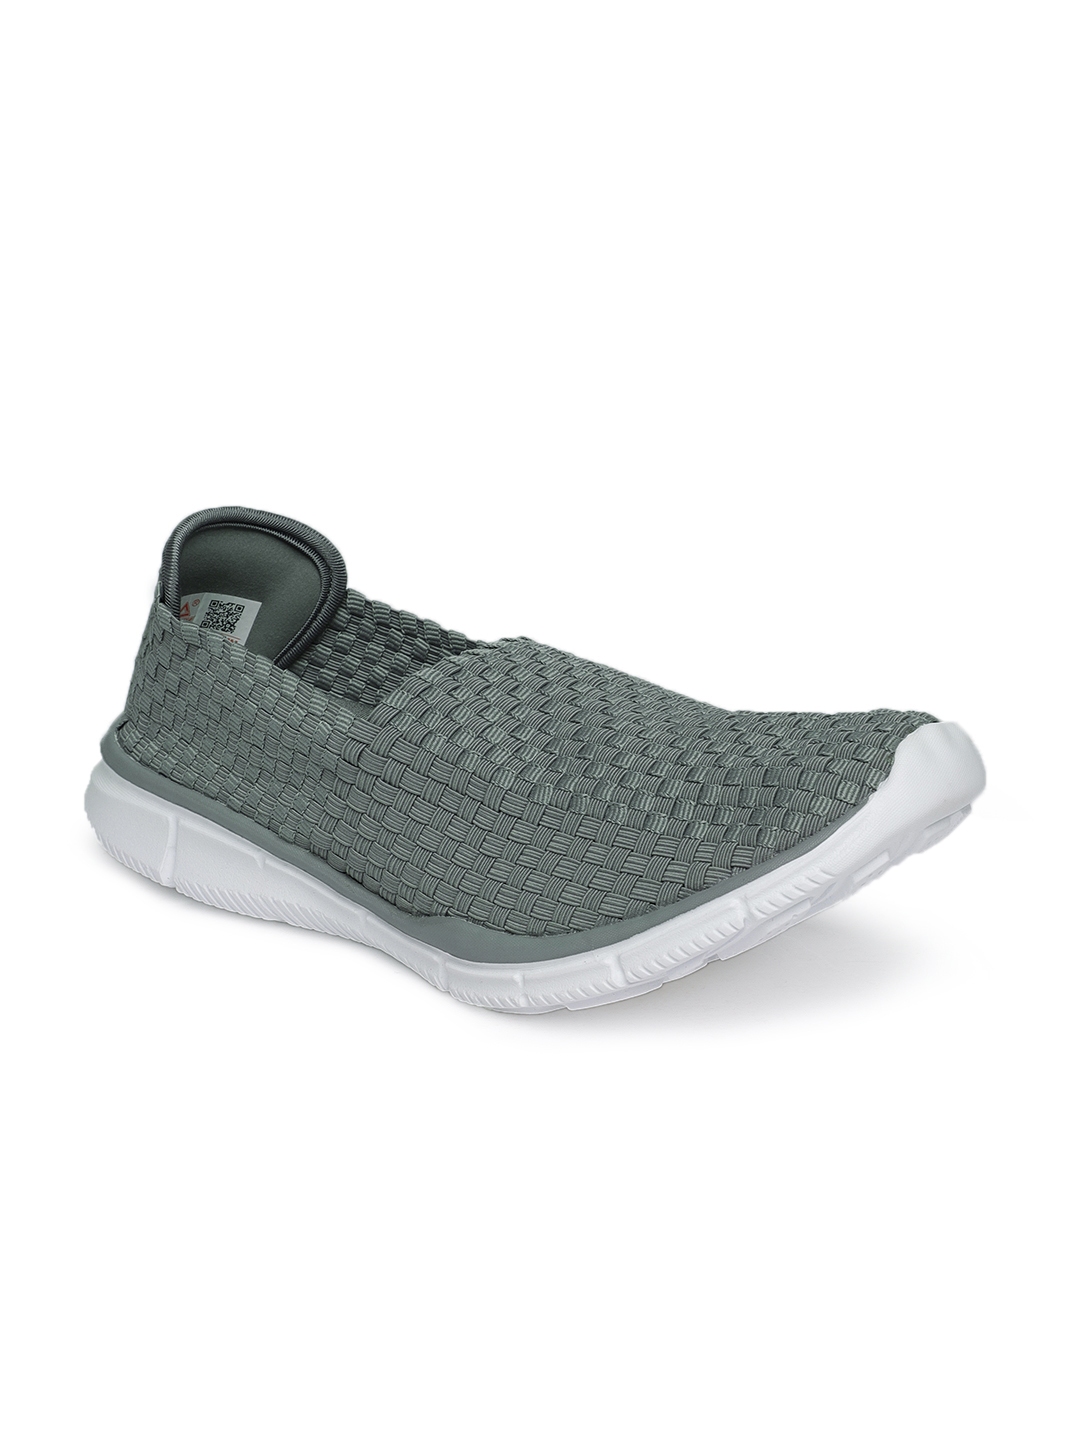 Buy PEAK Men Grey Slip On Sneakers - Casual Shoes for Men 8130747 | Myntra